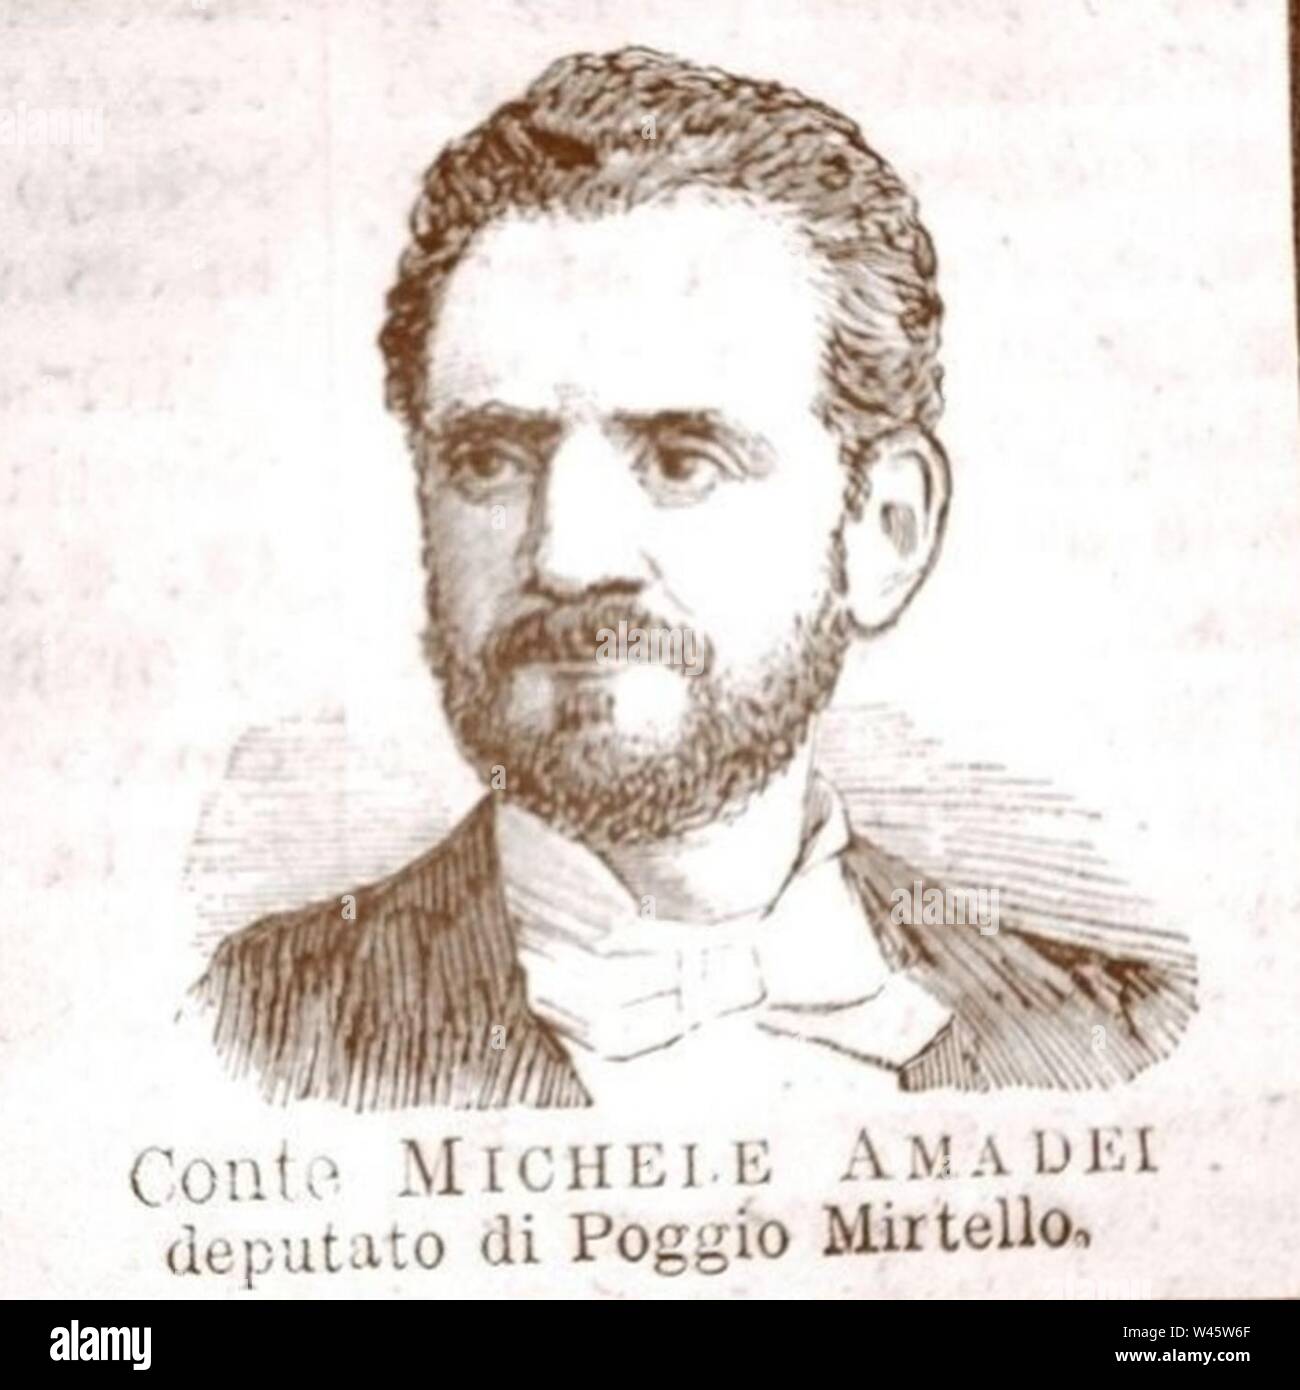 Conte Michele Amadei (deputato di Poggio Mirtello). Stock Photo